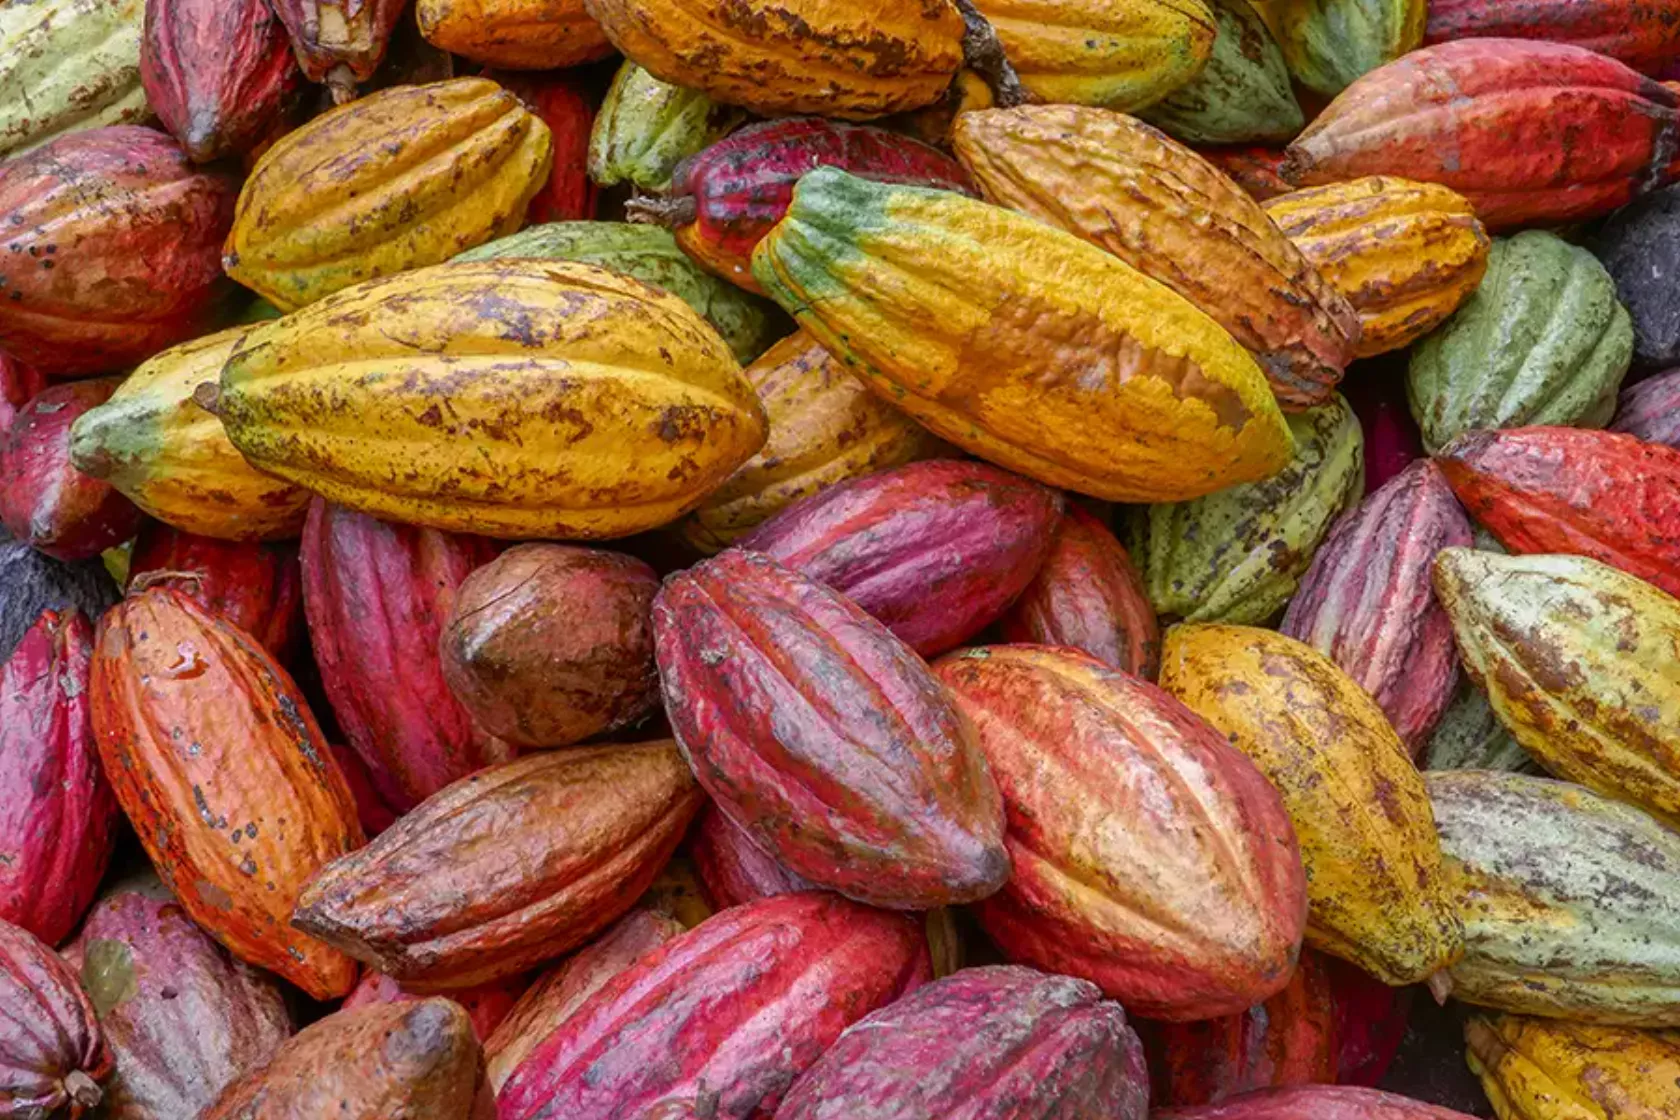 Ungeöffnete Früchte der Kakao-Pflanze gelb, rot, grün changierend.